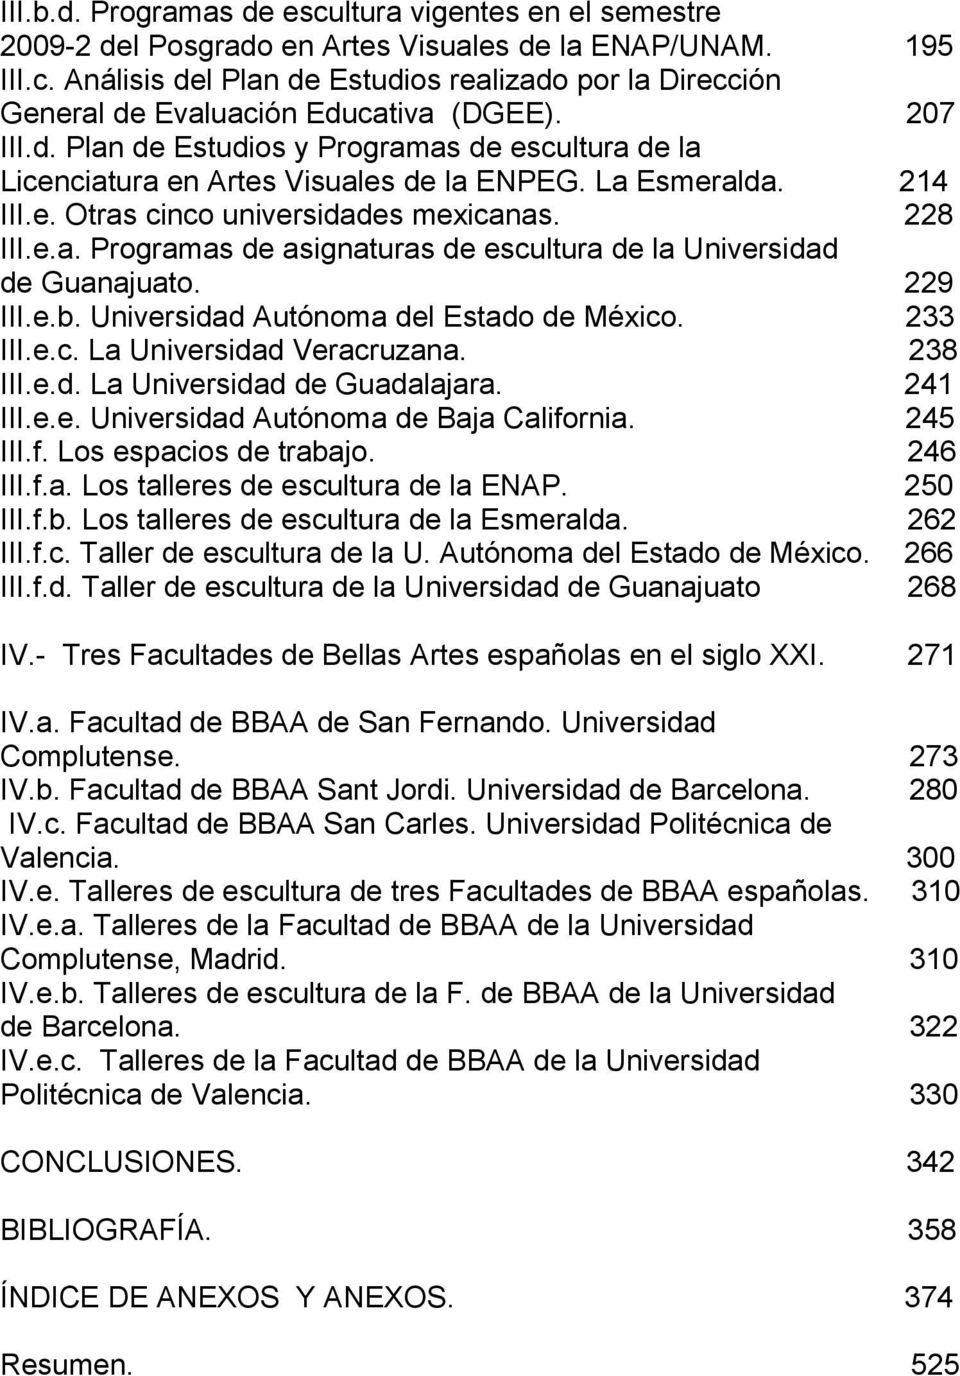 229 III.e.b. Universidad Autónoma del Estado de México. 233 III.e.c. La Universidad Veracruzana. 238 III.e.d. La Universidad de Guadalajara. 241 III.e.e. Universidad Autónoma de Baja California.